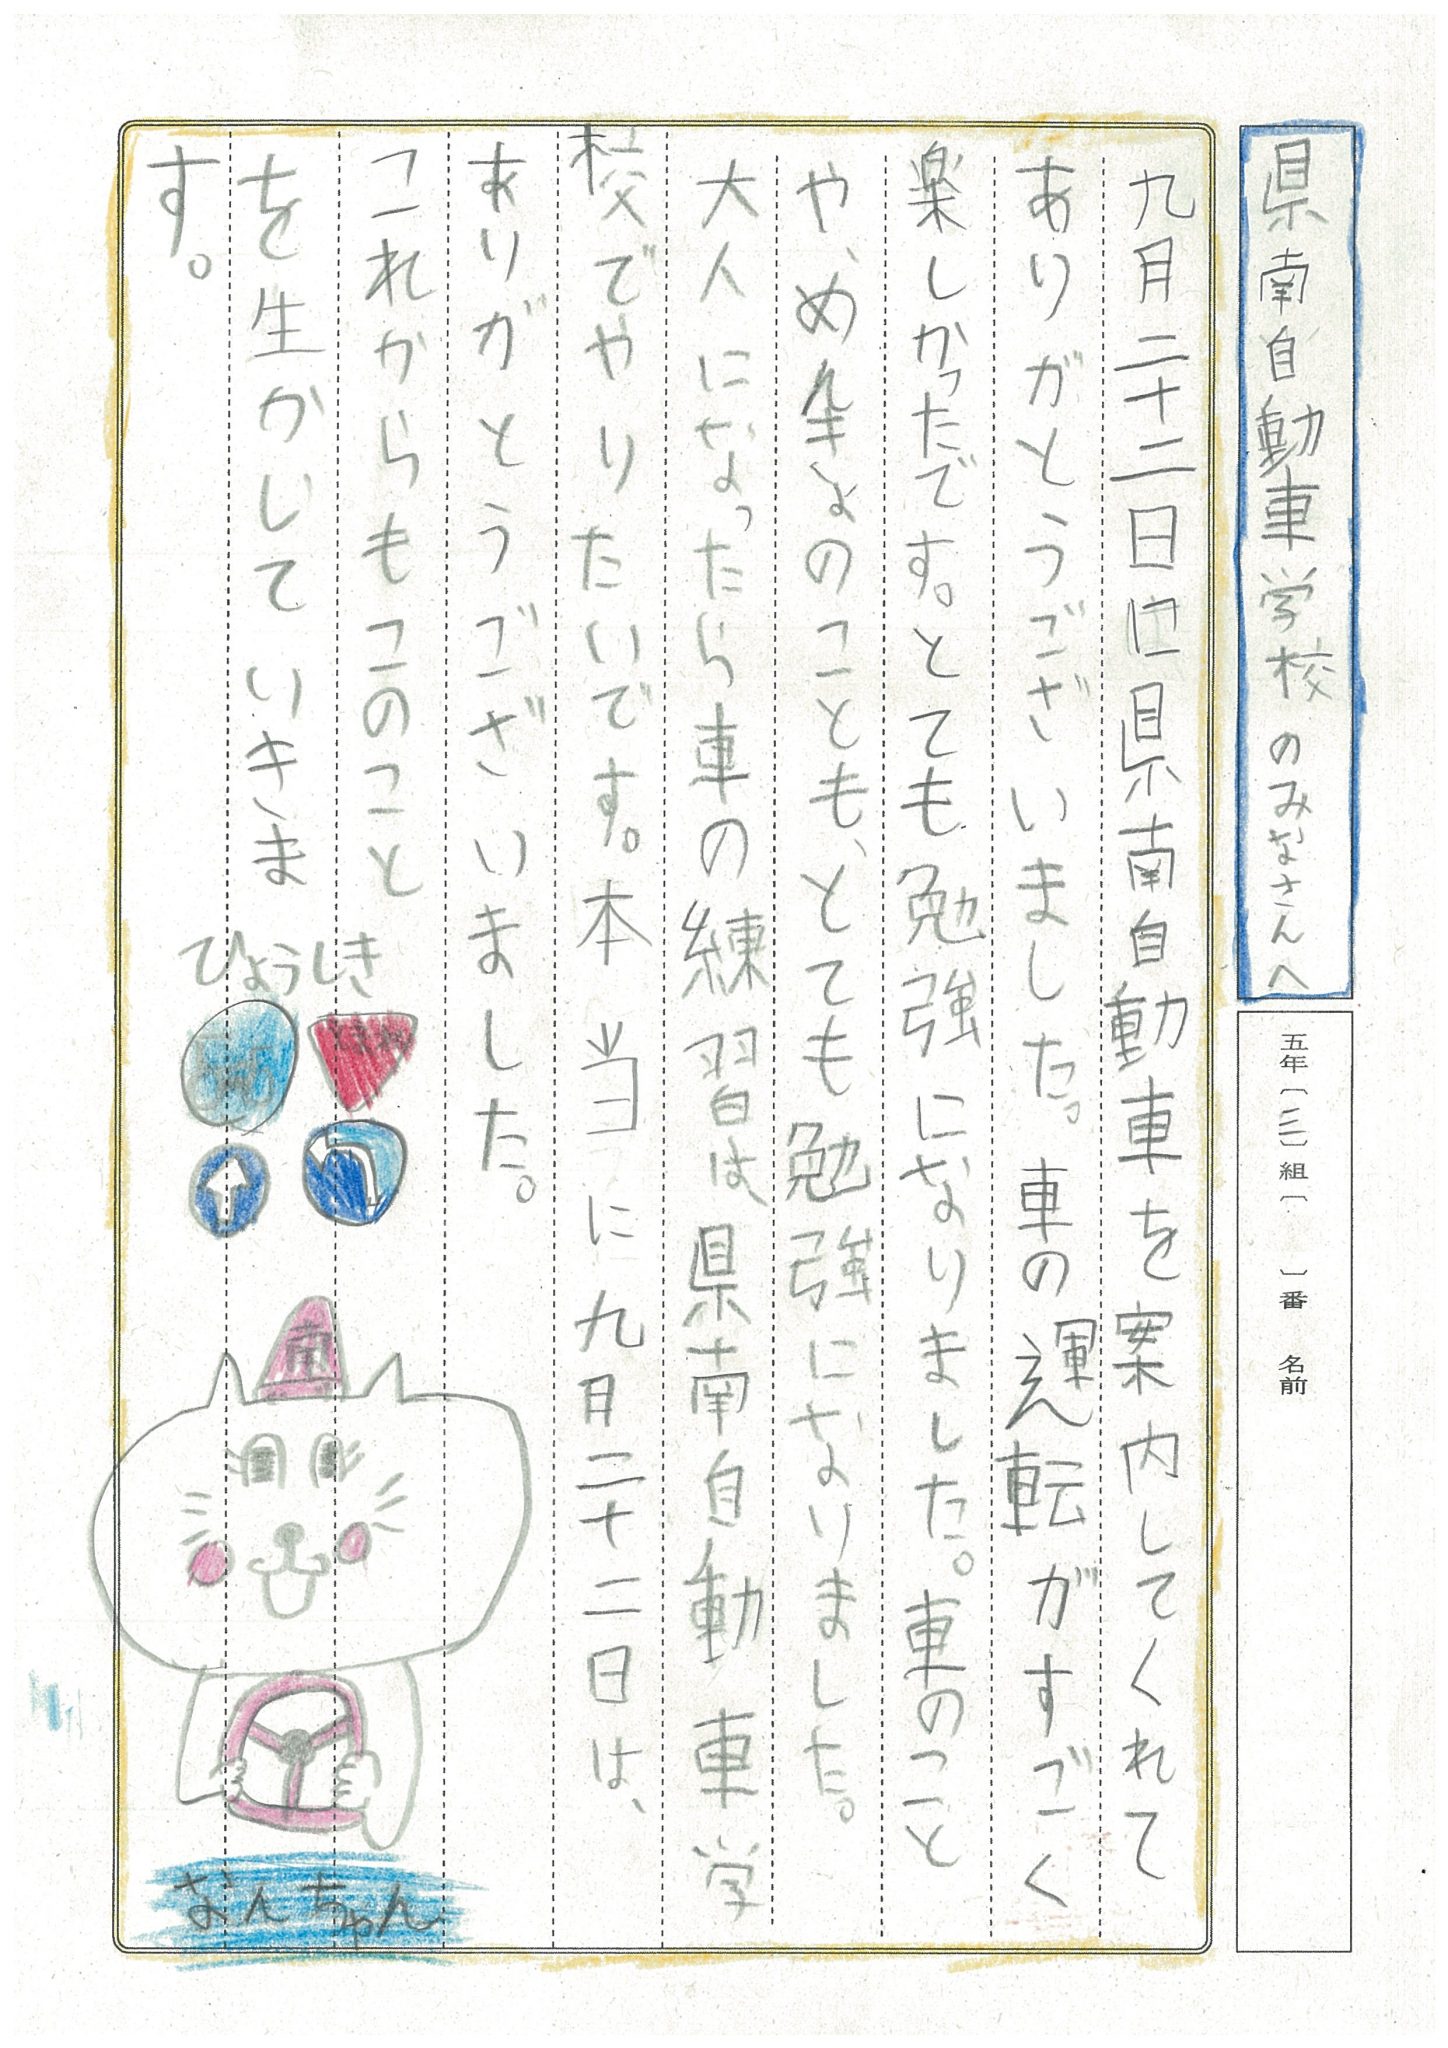 真鍋小５年生からお礼の手紙が届きました 茨城けんなん自動車学校